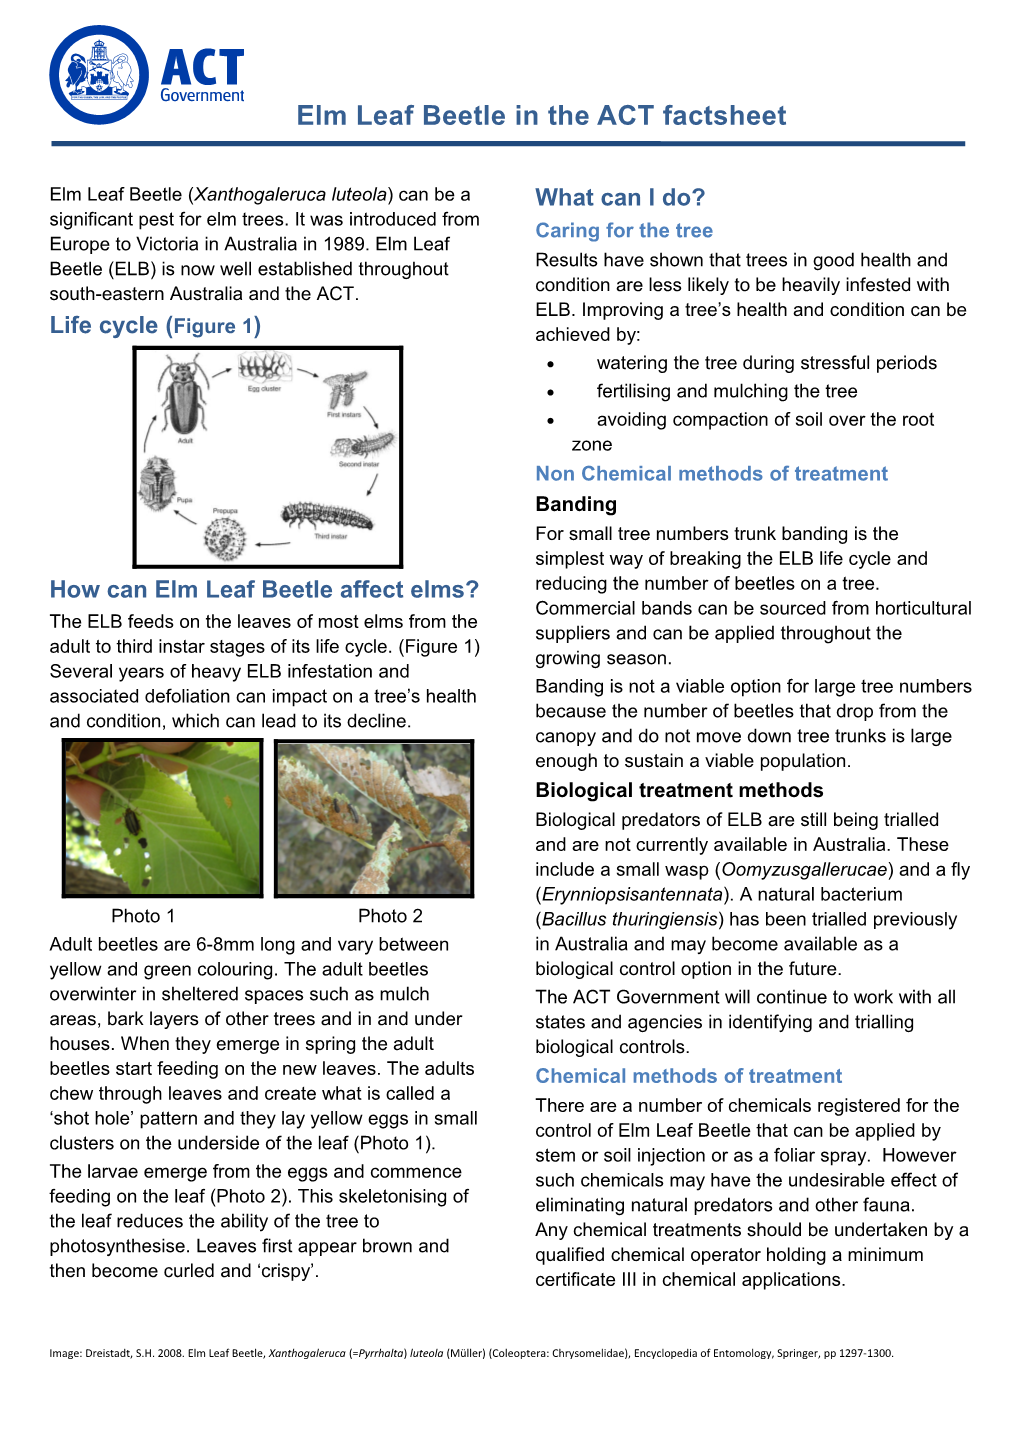 Elm Leaf Beetle in the ACT - Factsheet